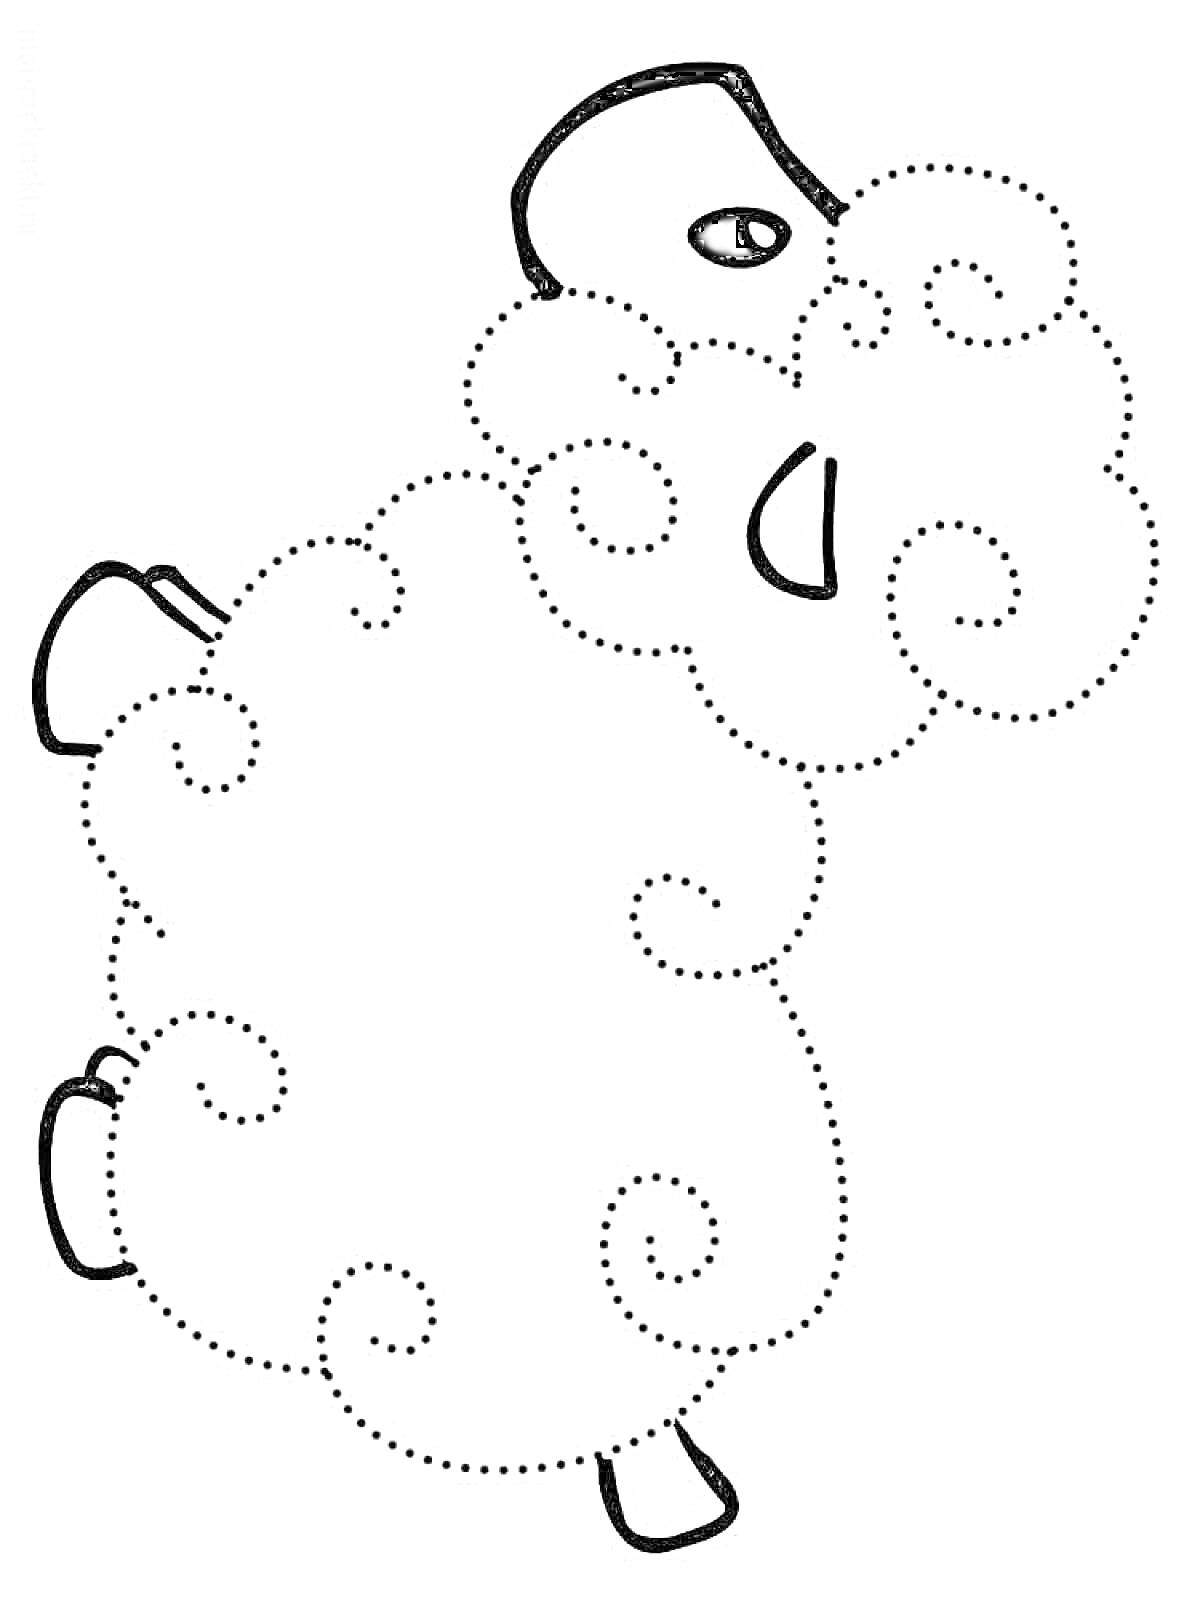 Раскраска Овца с кучерявой шерстью, выполненная по точкам, с глазом, ухом и копытцем